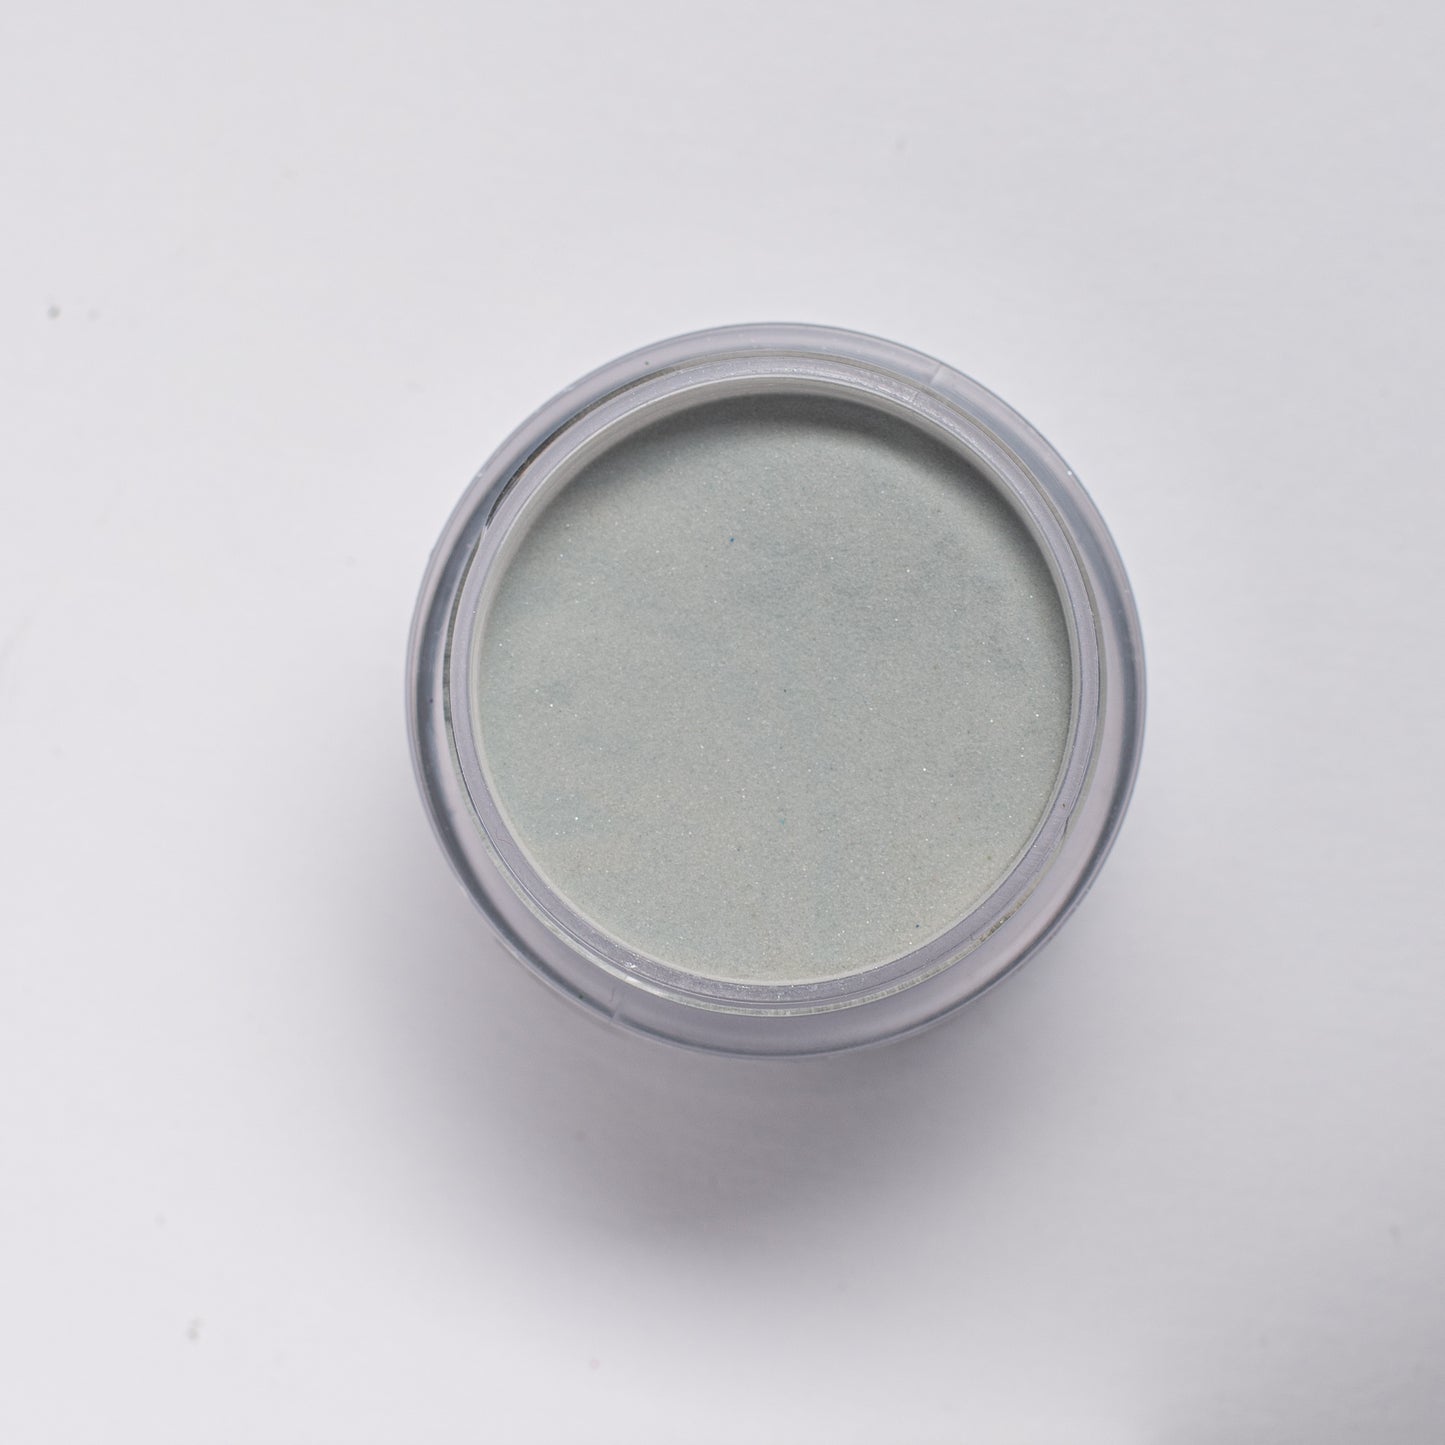 Pixie P03 - 2 in 1 Dip & Acrylic Powder (2oz)